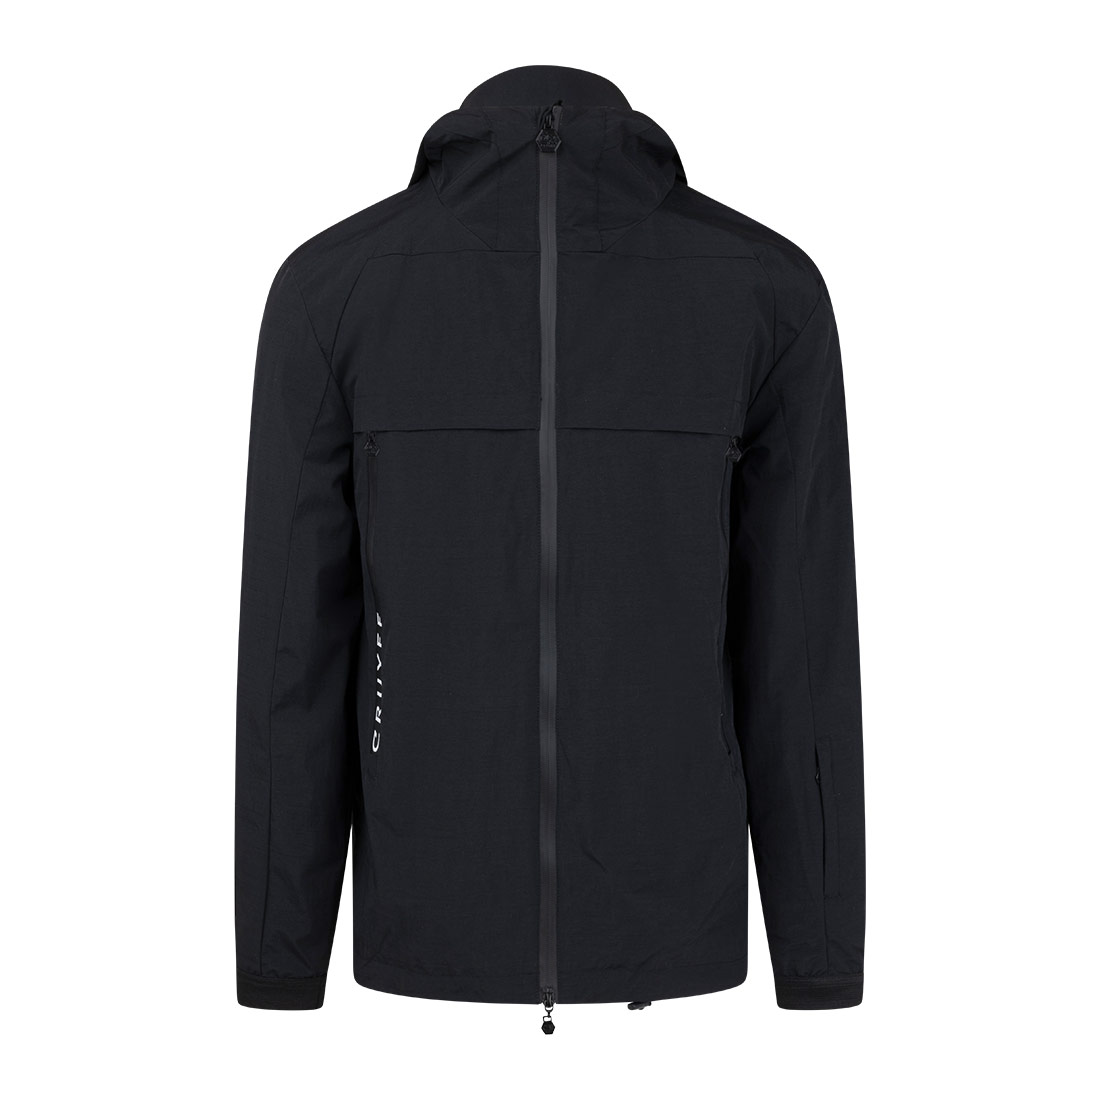 Cruyff - Praga Hooded Jacket - Black - Sportus - Where sport meets fashion